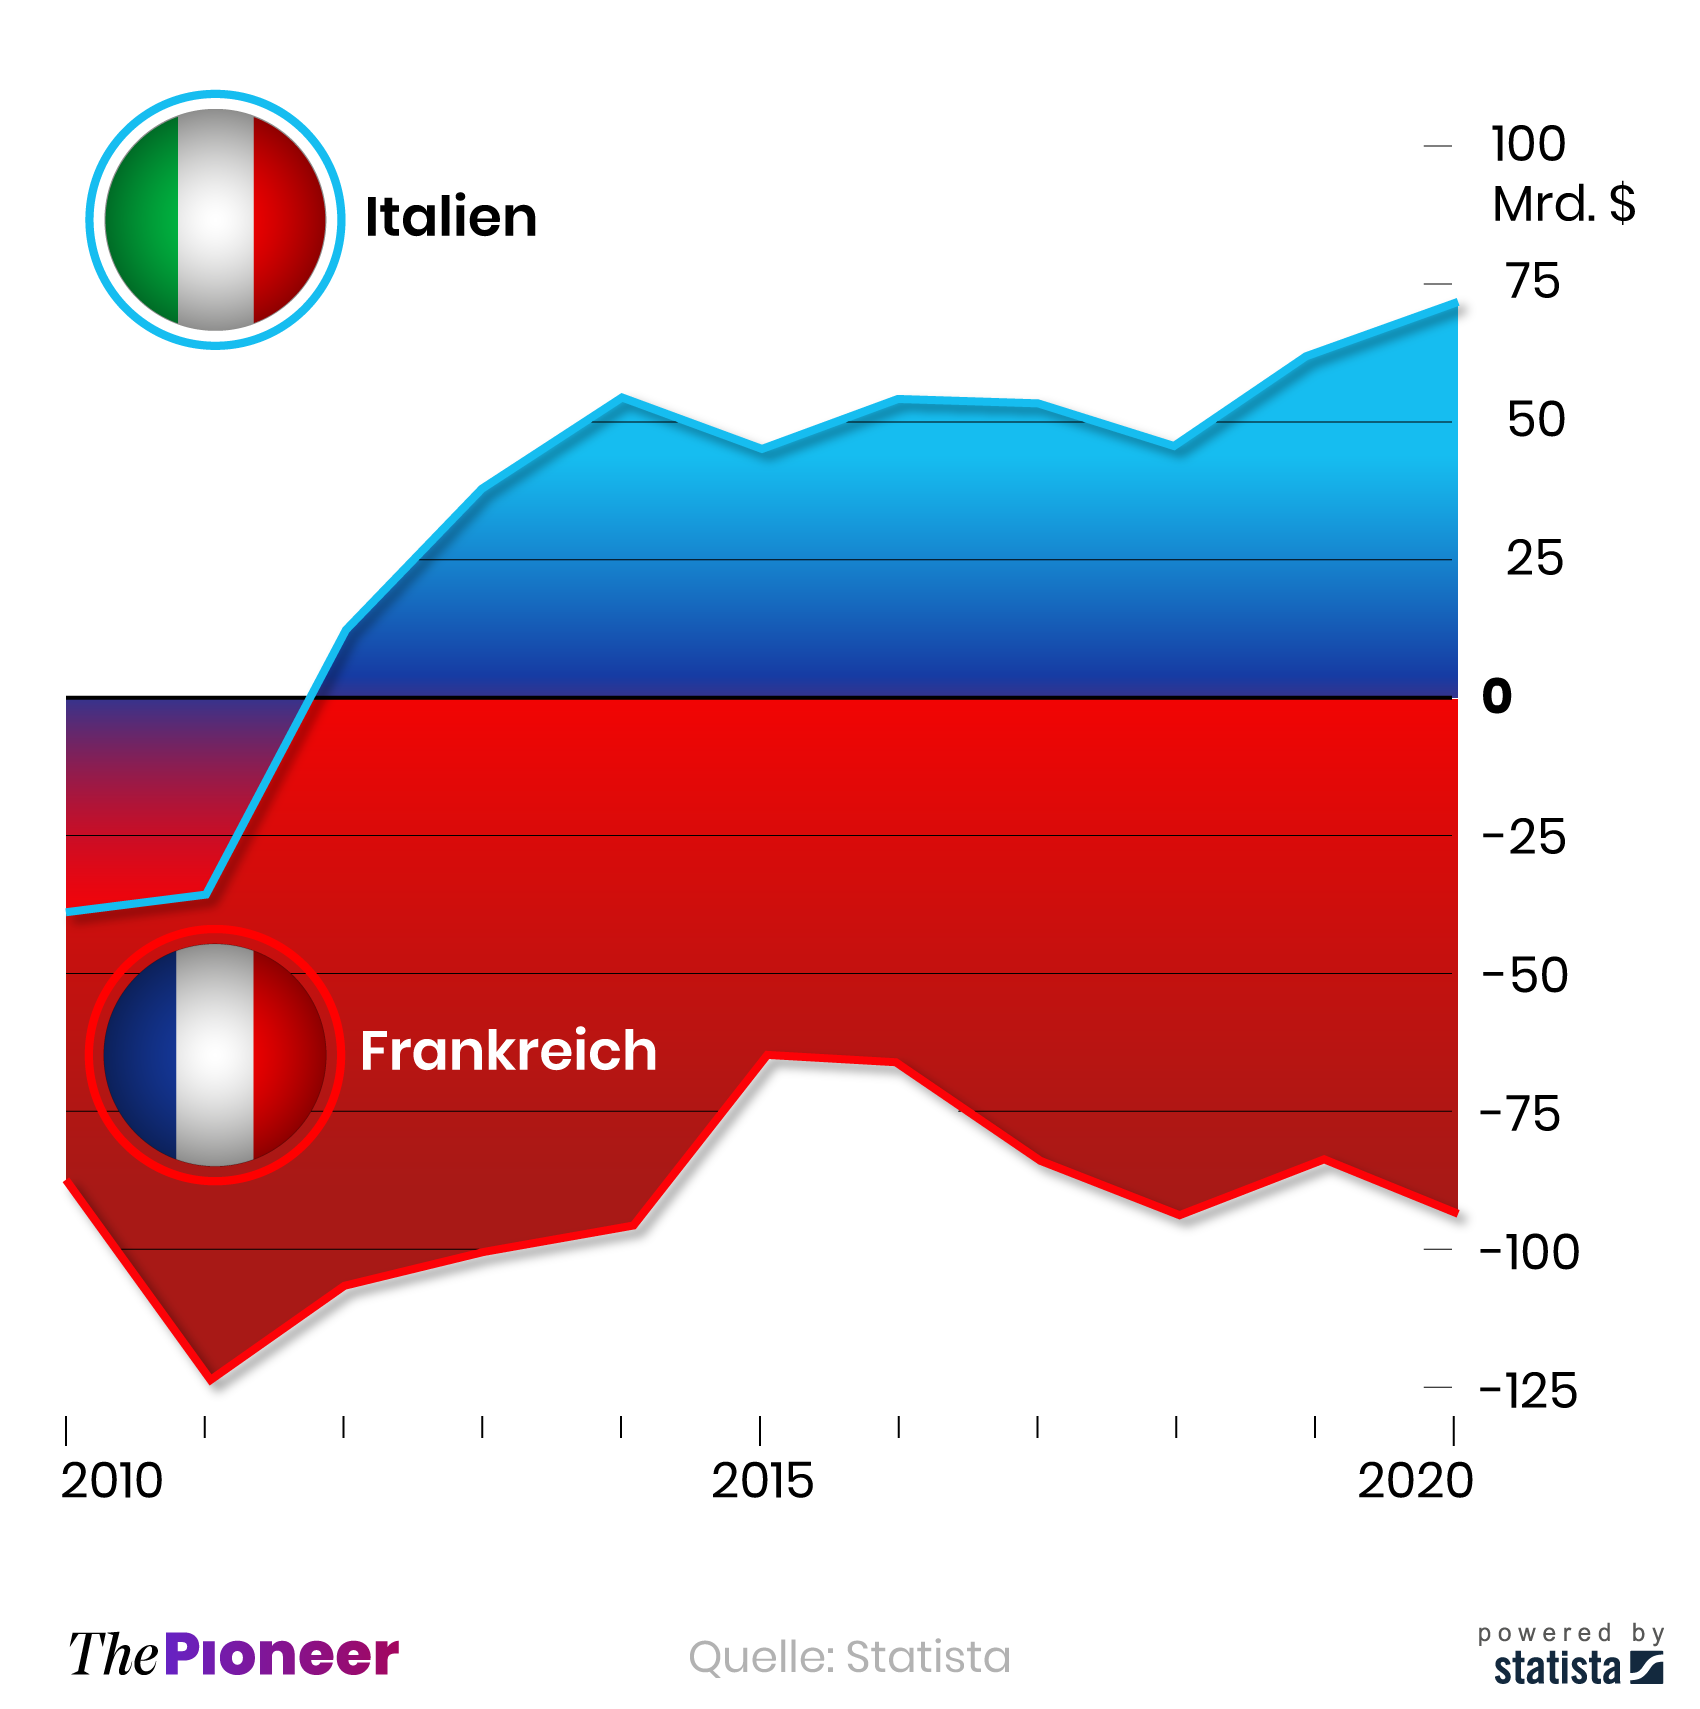 Entwicklung der Handelsbilanzen von Frankreich und Italien seit 2010, in Milliarden US-Dollar